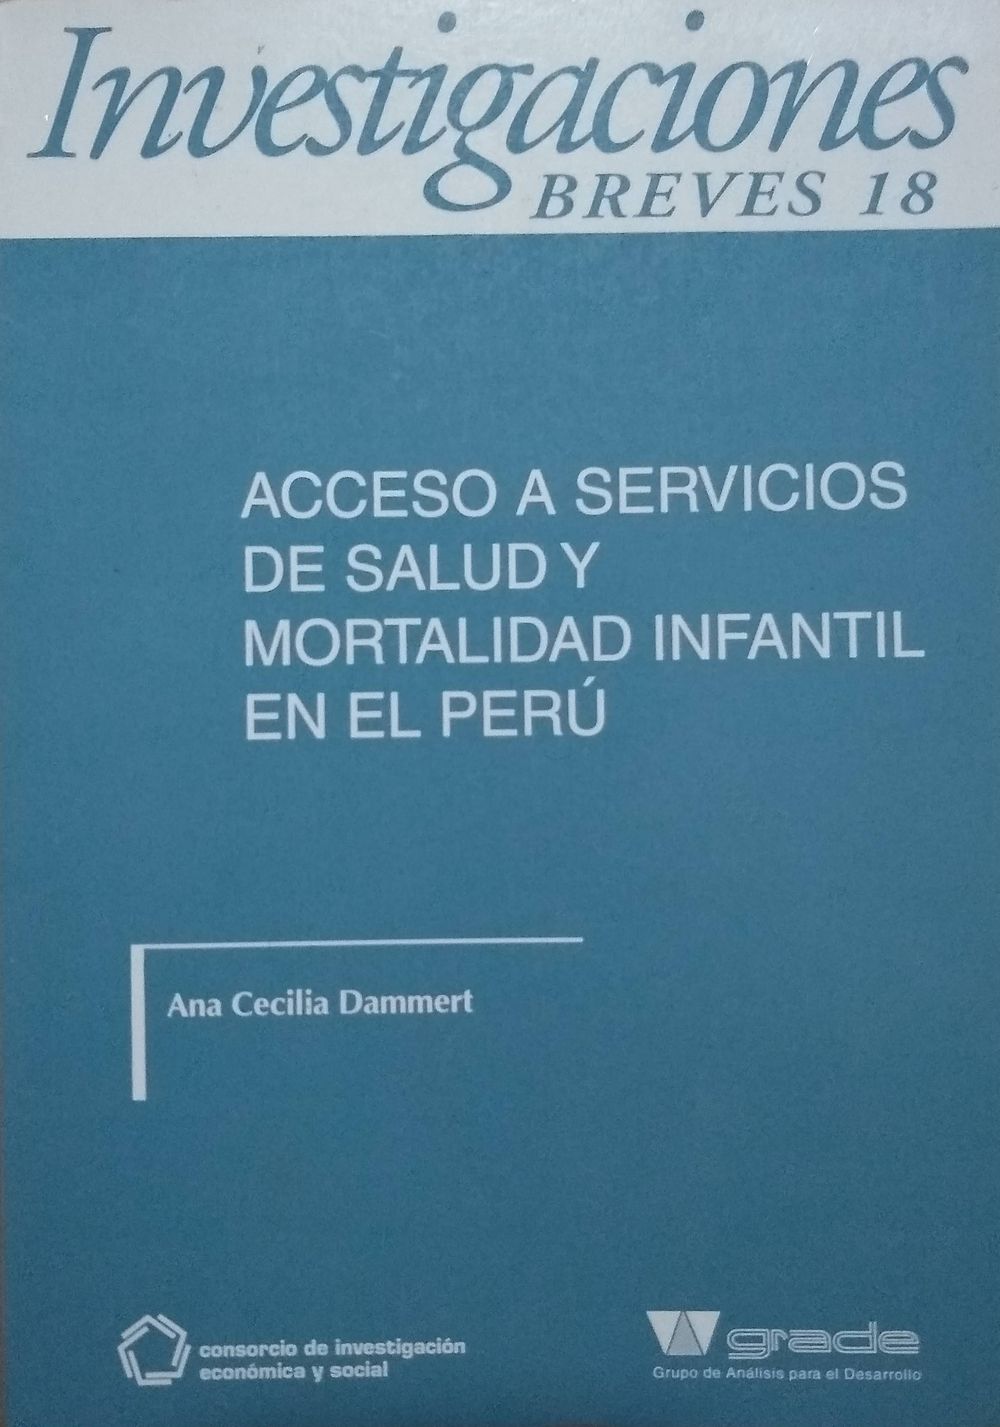 Acceso a servicios de salud y mortalidad infantil en el Perú